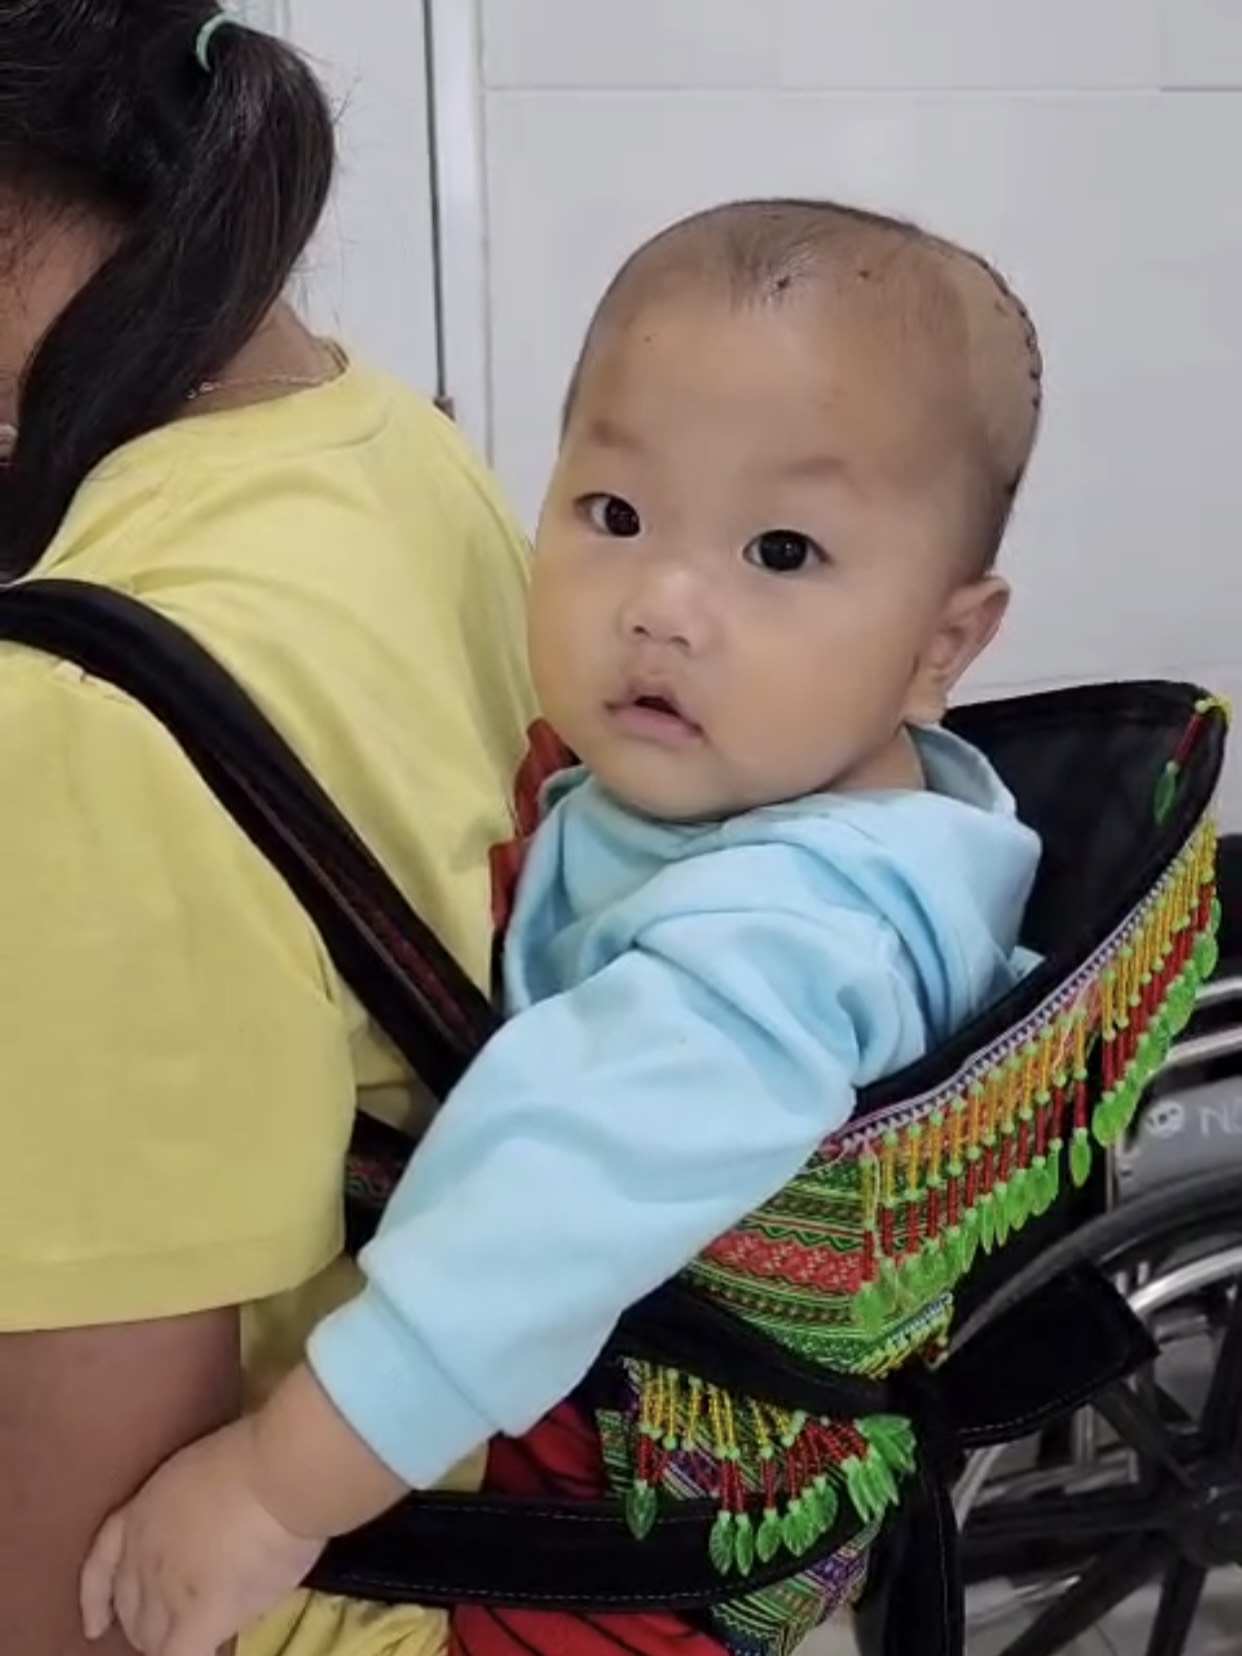 Phẫu thuật cấp cứu thành công bé trai 10 tháng tuổi bị ngã bể lún sọ - Ảnh 3.